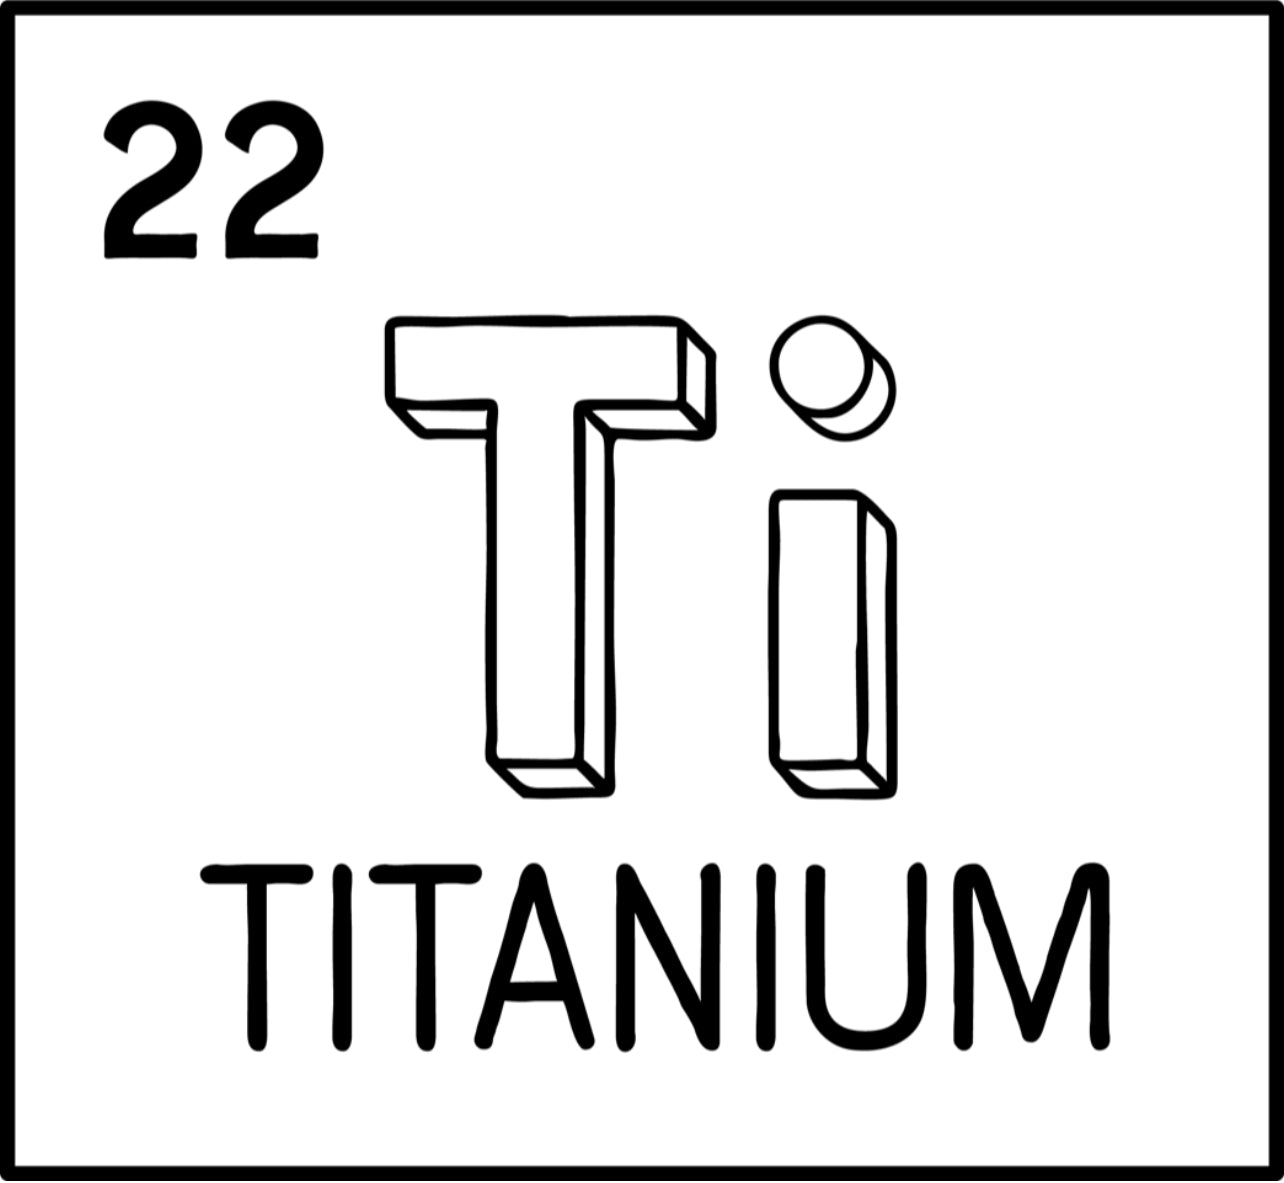 Titanium in Safety Razors